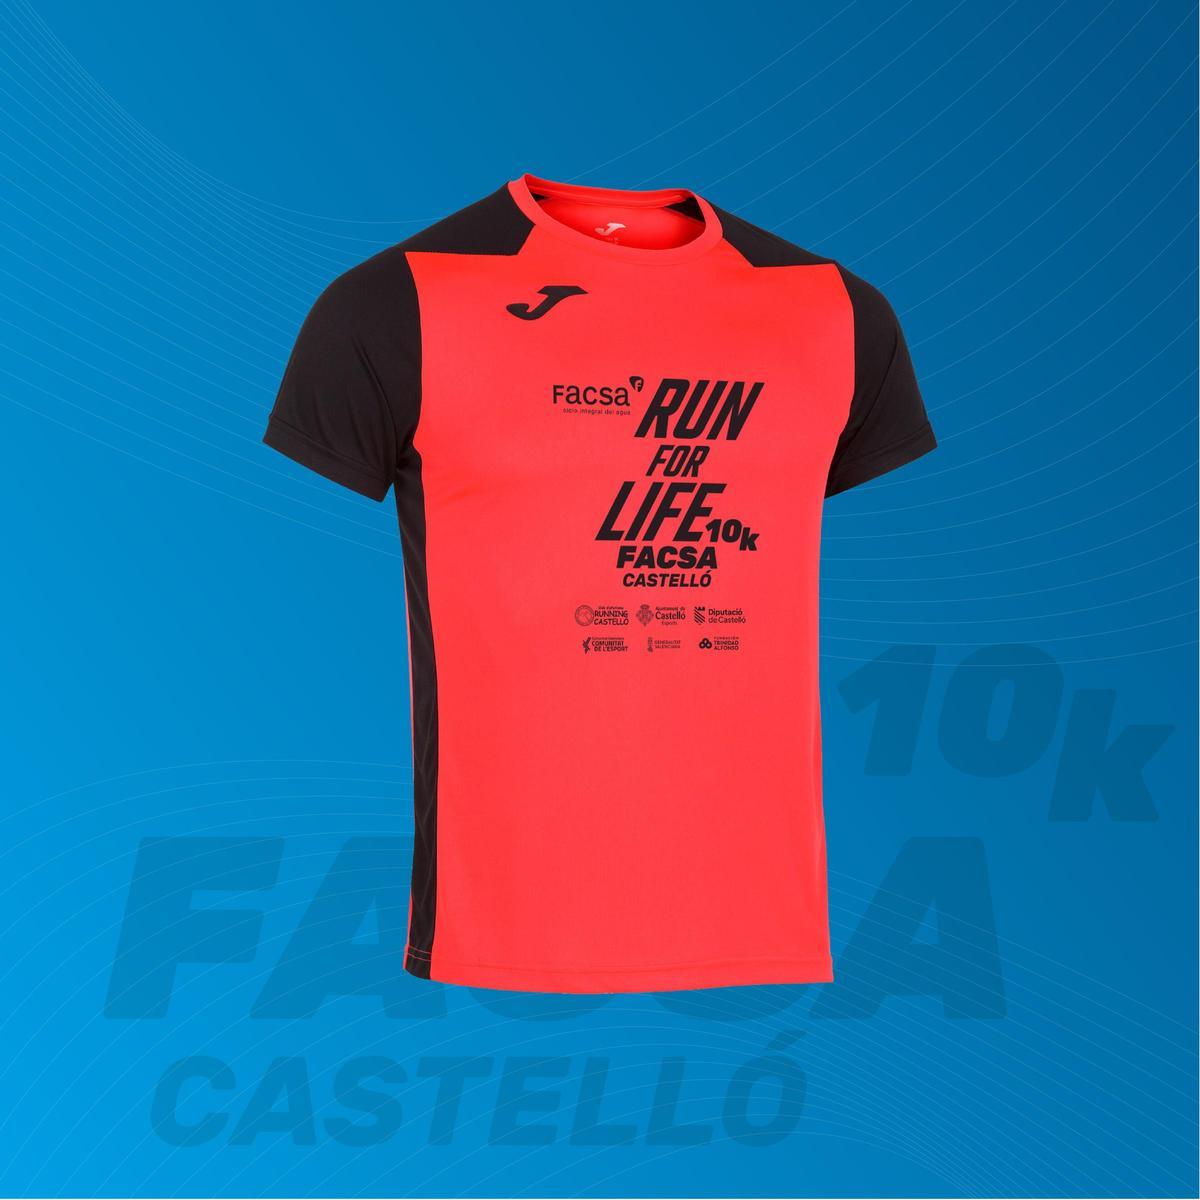 La camiseta oficial de 10K FACSA Castelló es modelo Récord II, en color coral con letras en negro.